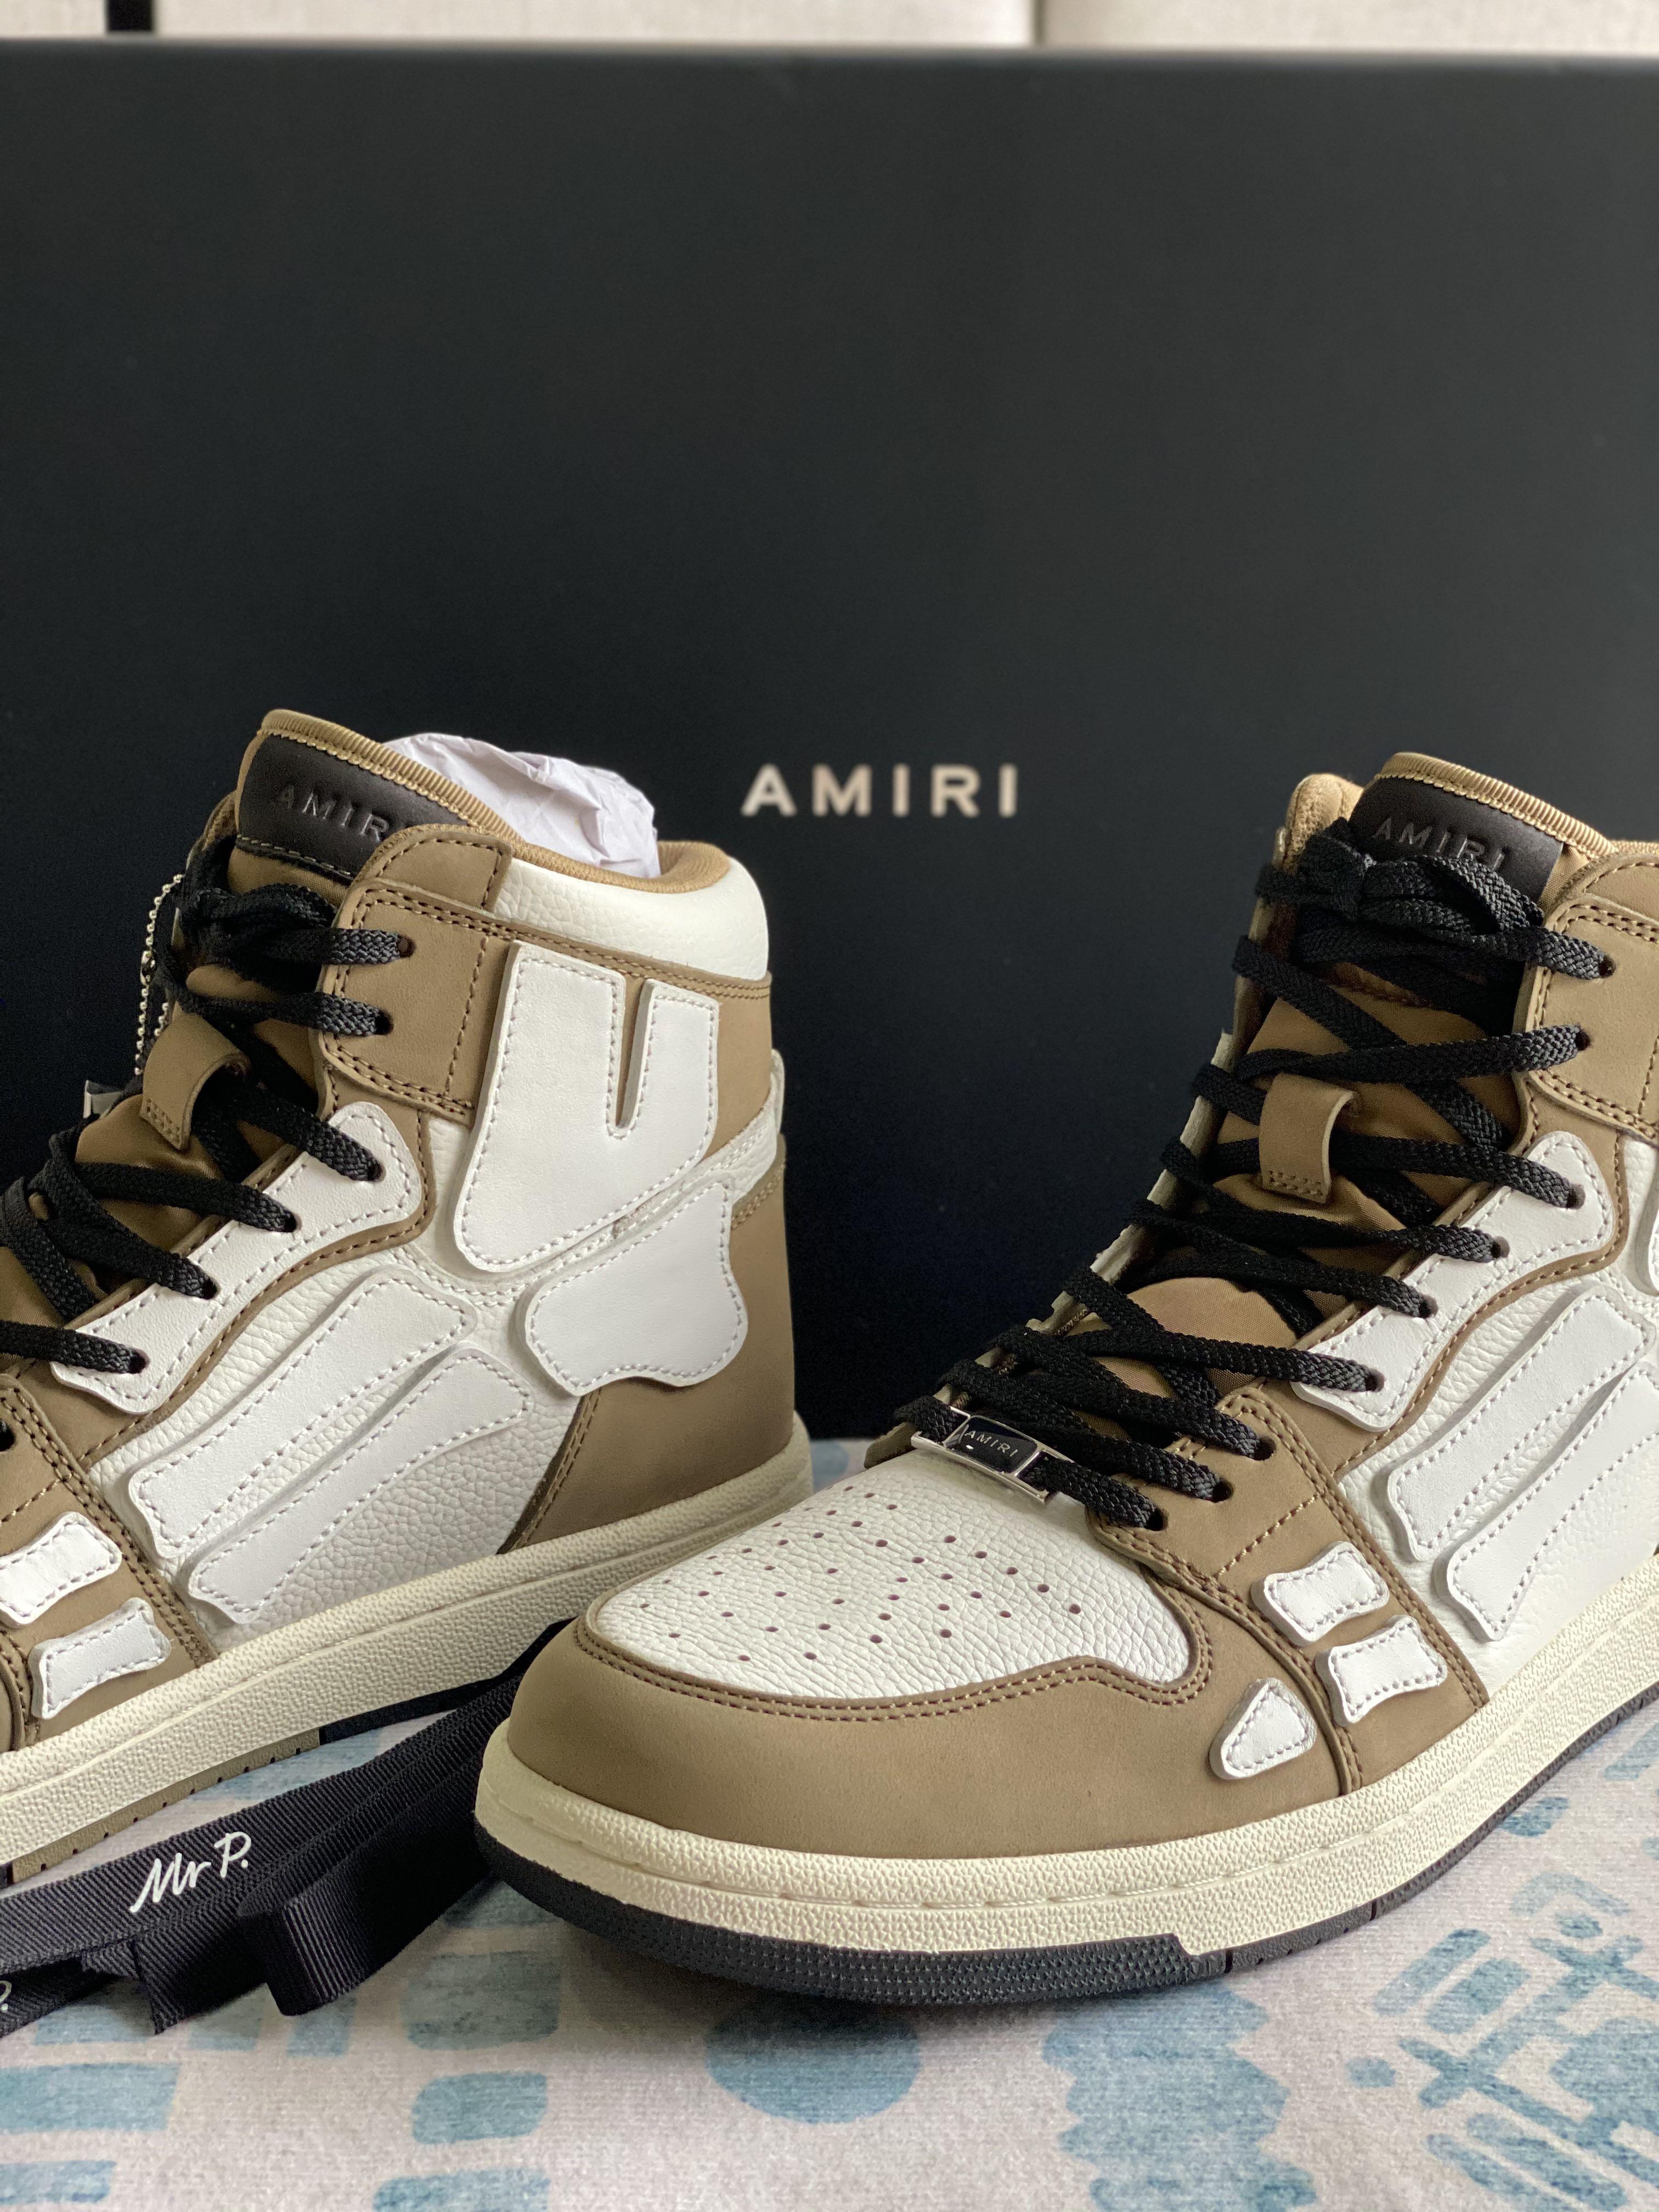 AMIRI Skel-Top Hi Sneaker, Men's Fashion, Footwear, Sneakers on